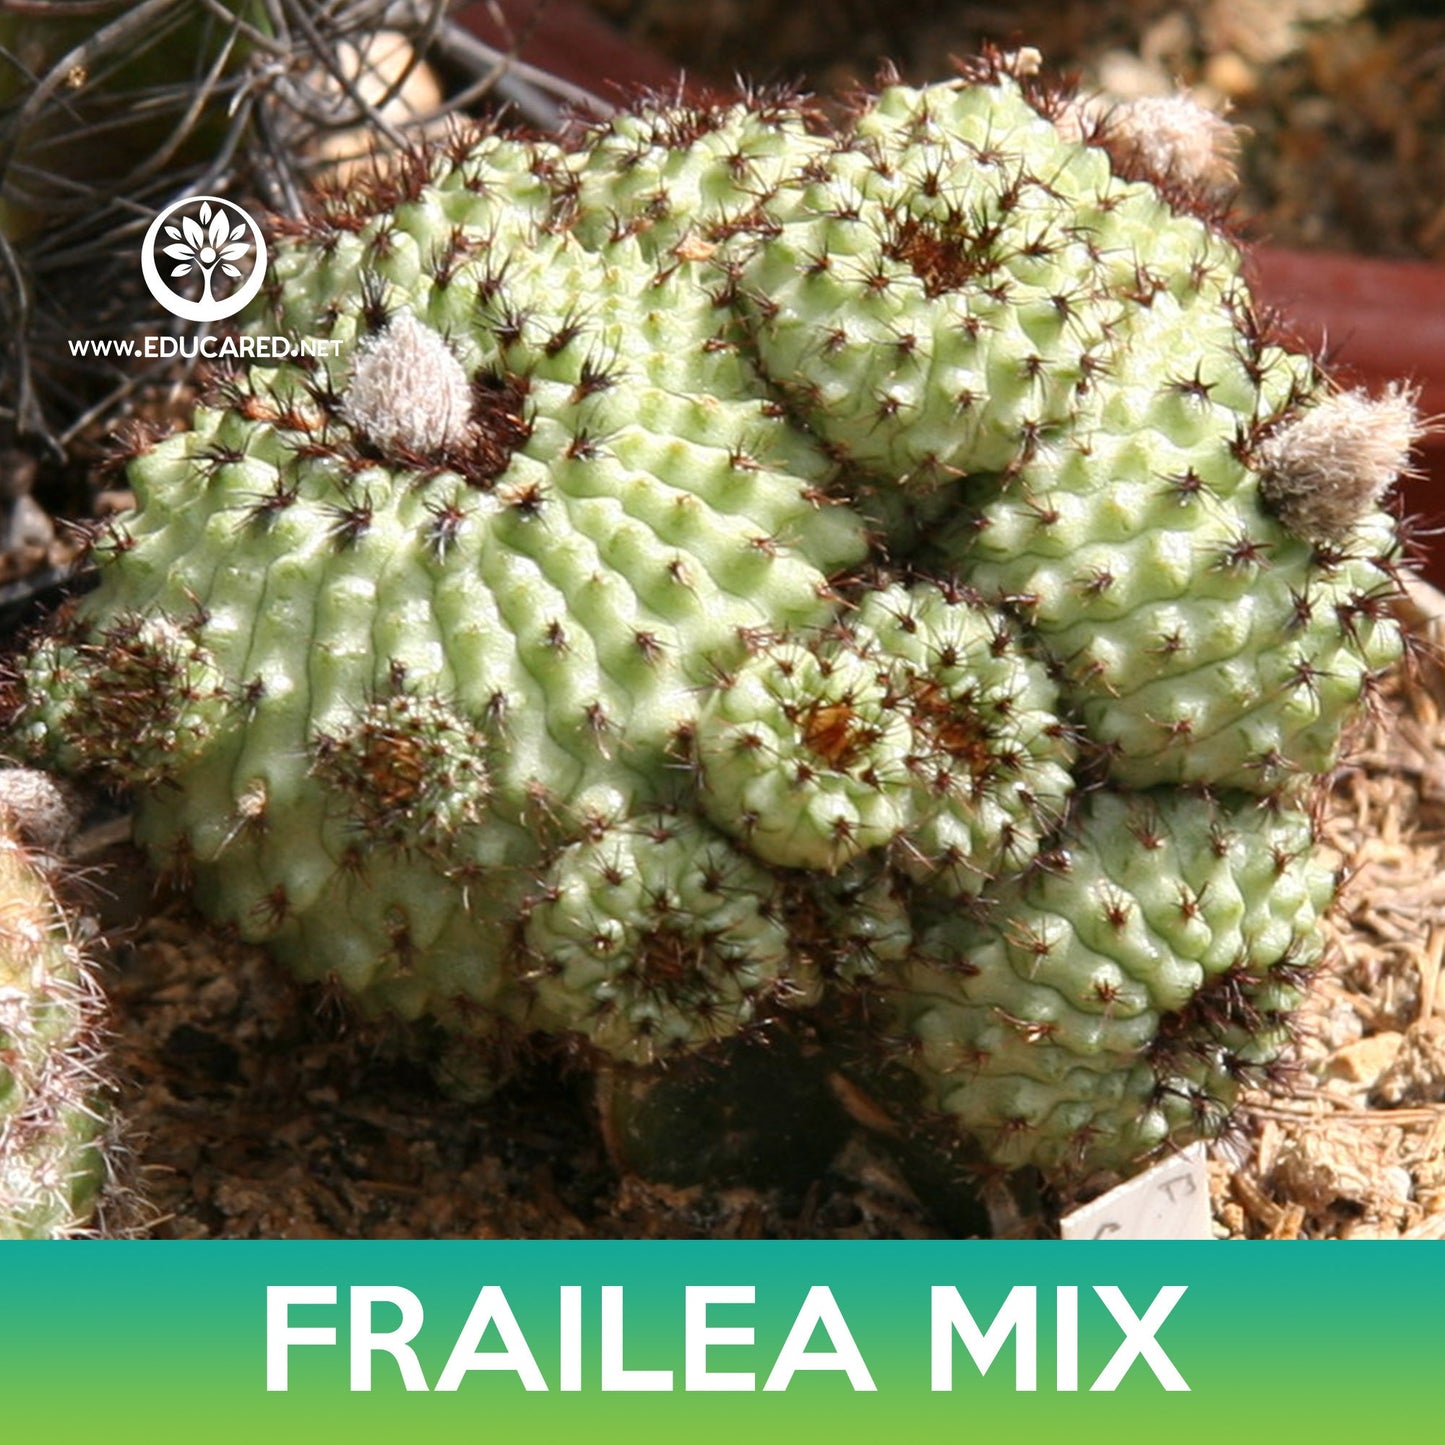 Frailea Cactus Mix Seeds